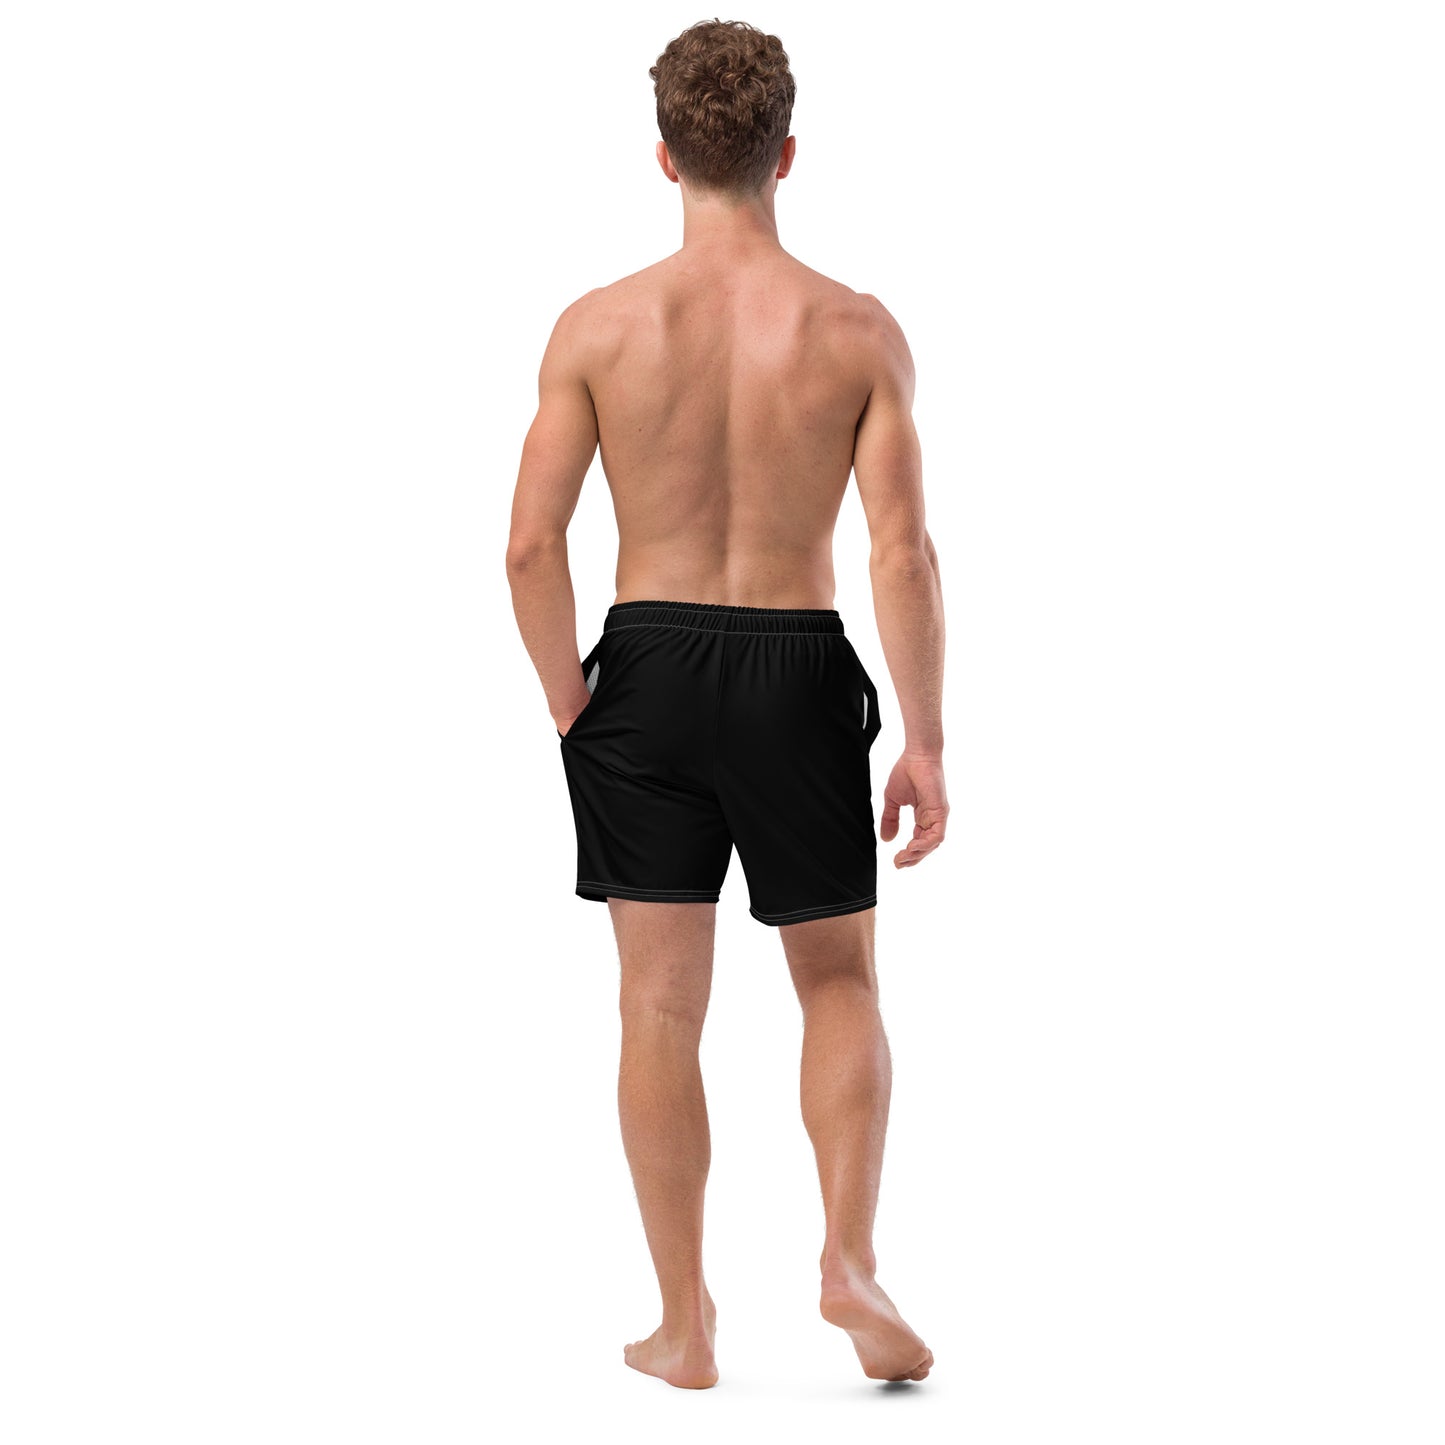 Men's swim trunks full logo